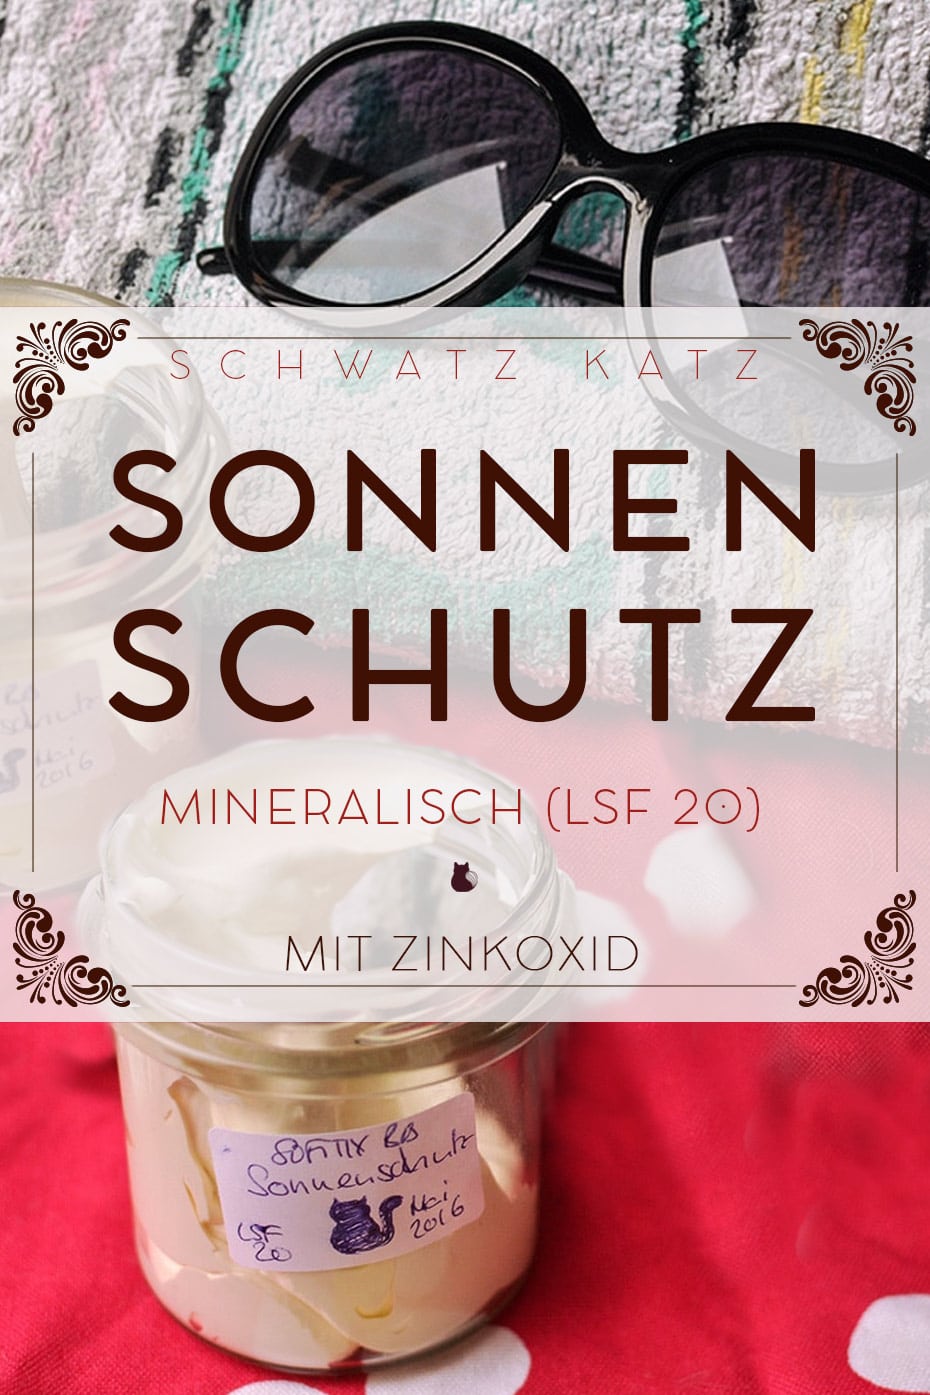 Mineralischer Sonnenschutz als Whip, LSF 20 | Schwatz Katz